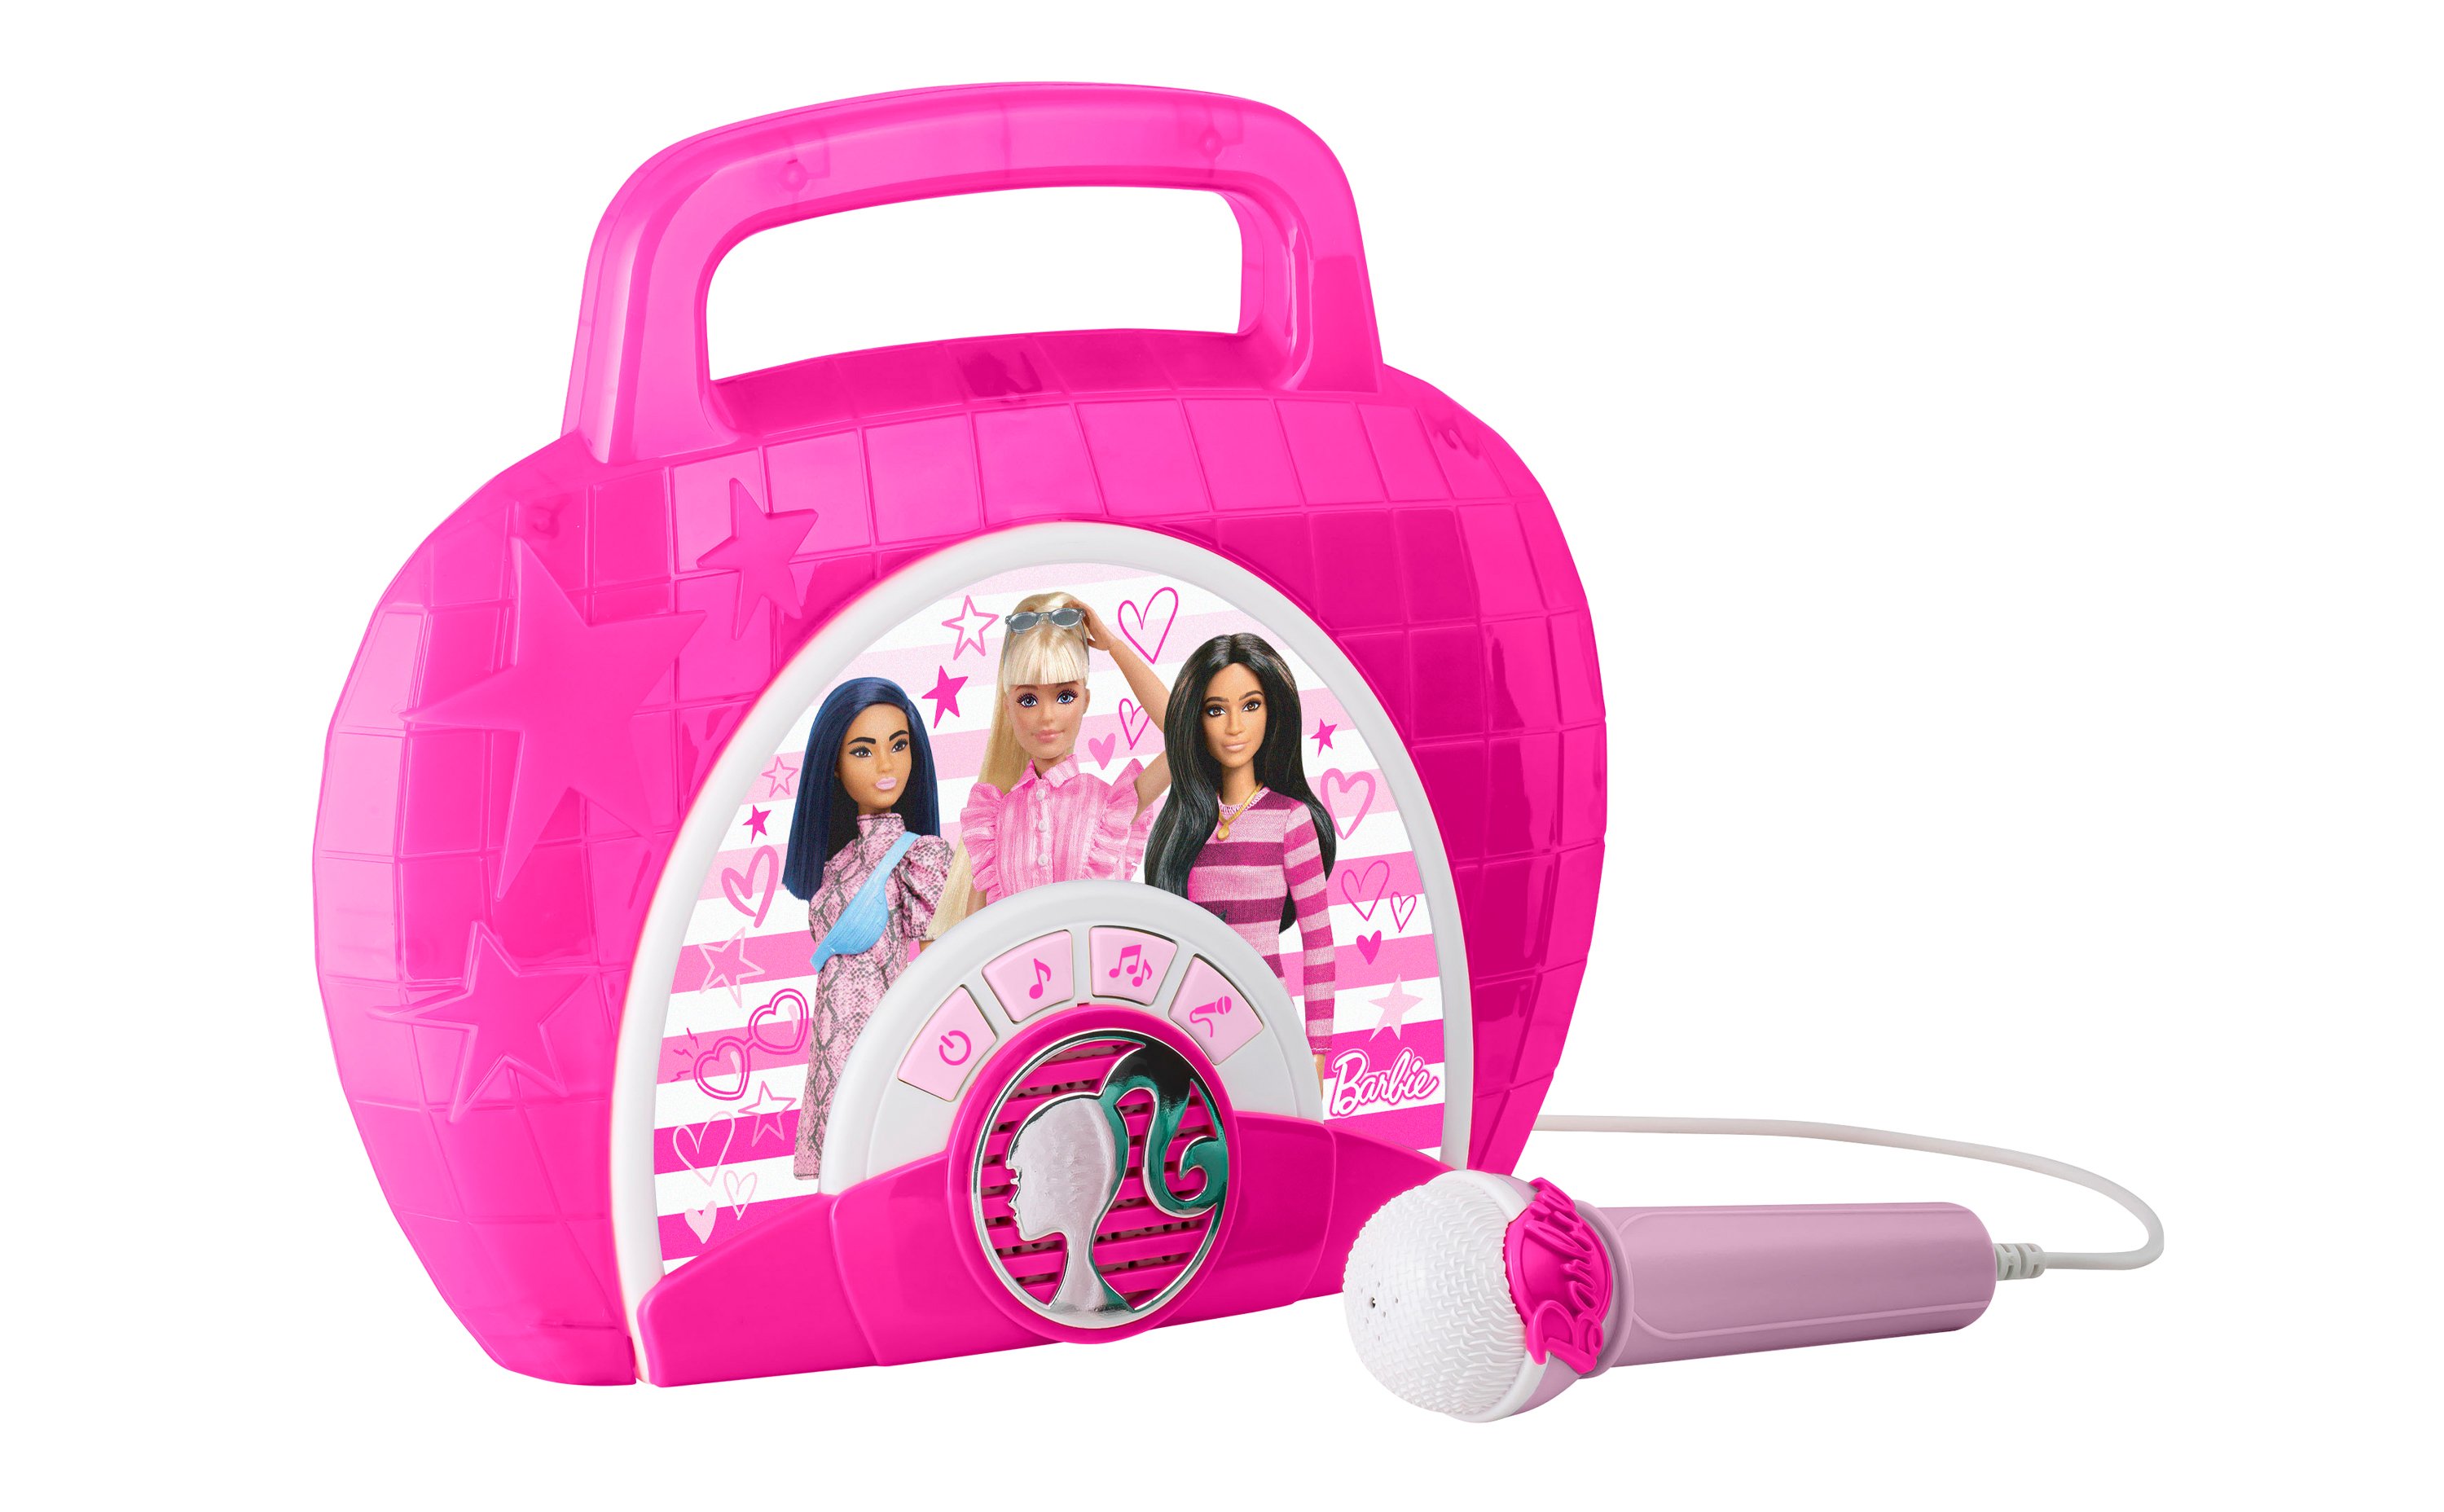 Barbie - Syng-med boombox med mikrofon